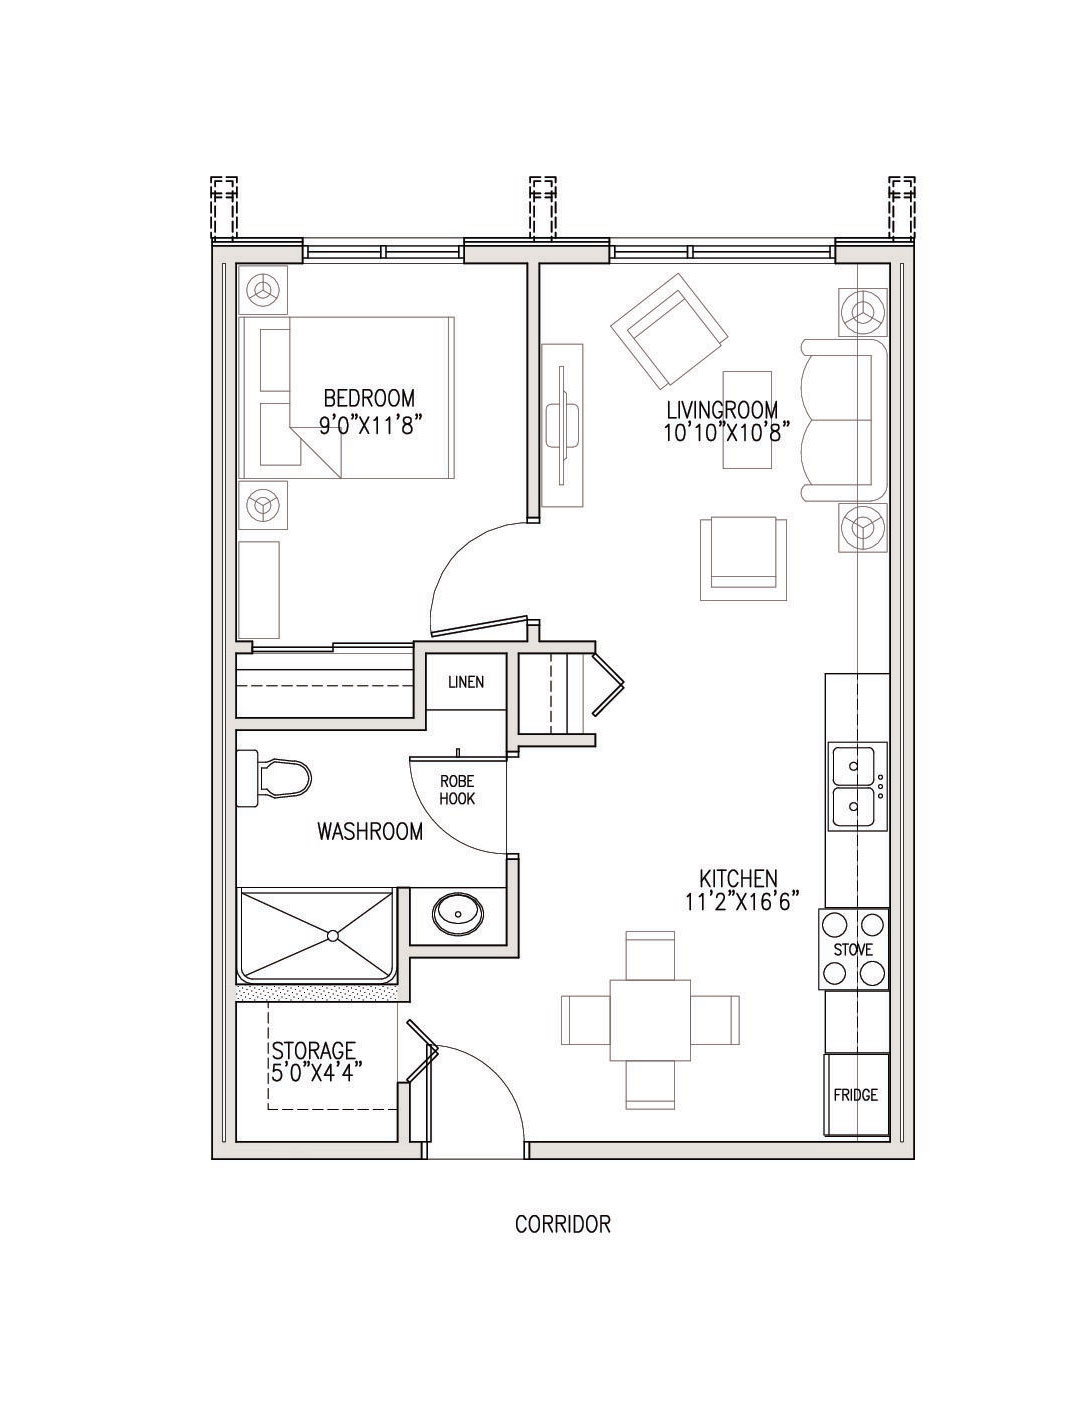 View or Print PDF of 1 Bedroom floor plan in new tab